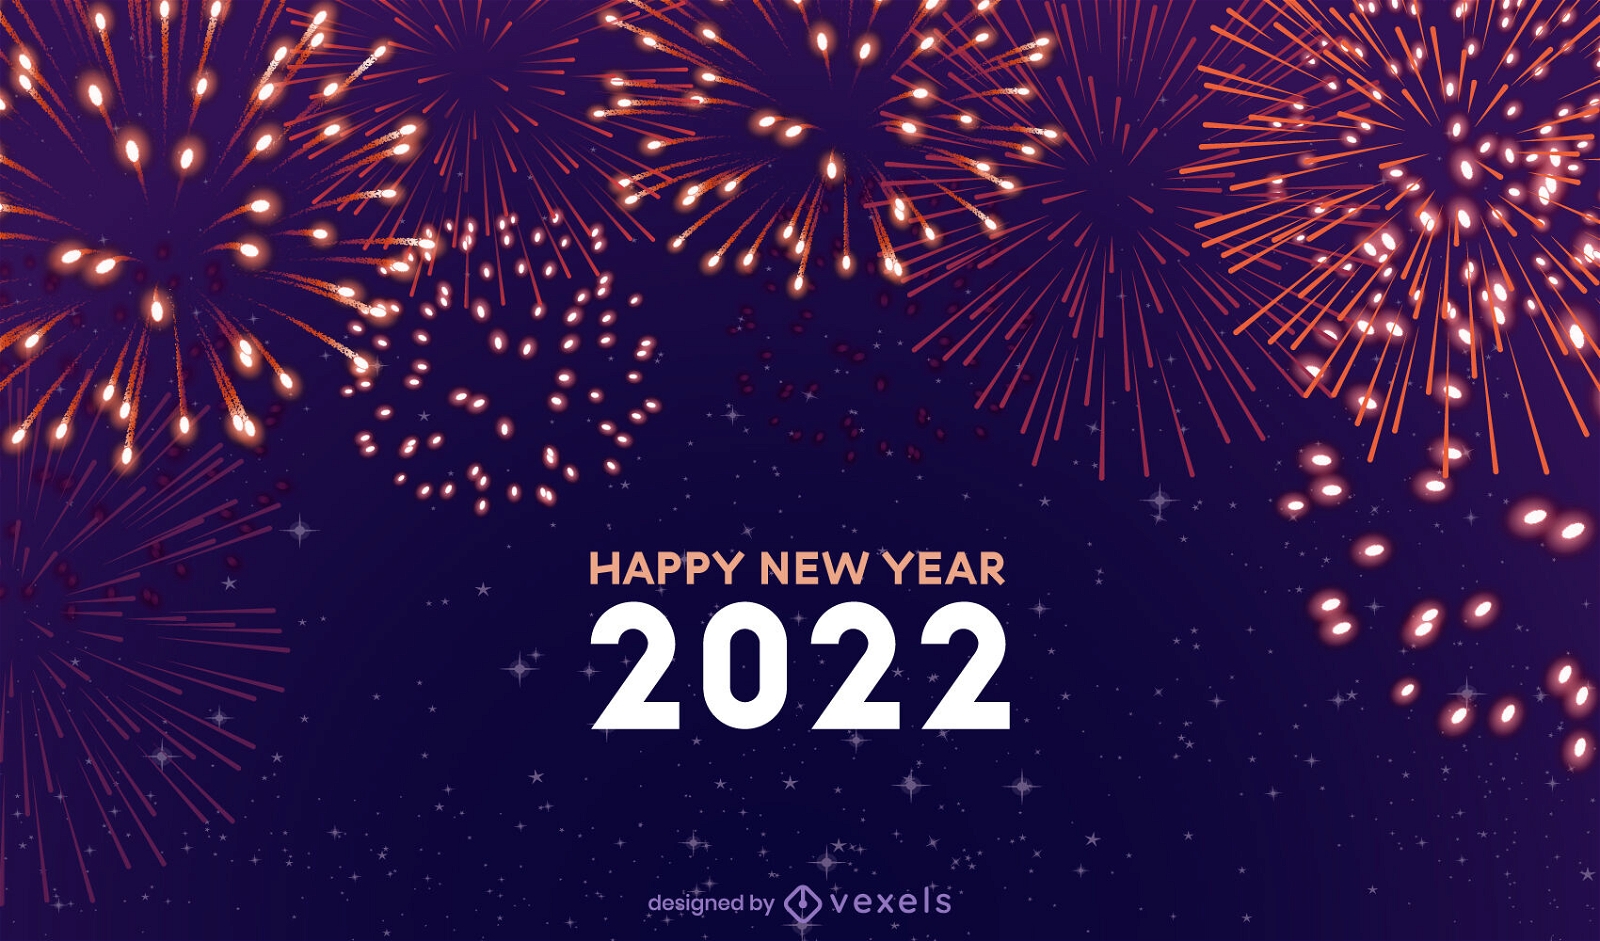 Feliz ano novo 2022 design de ilustração